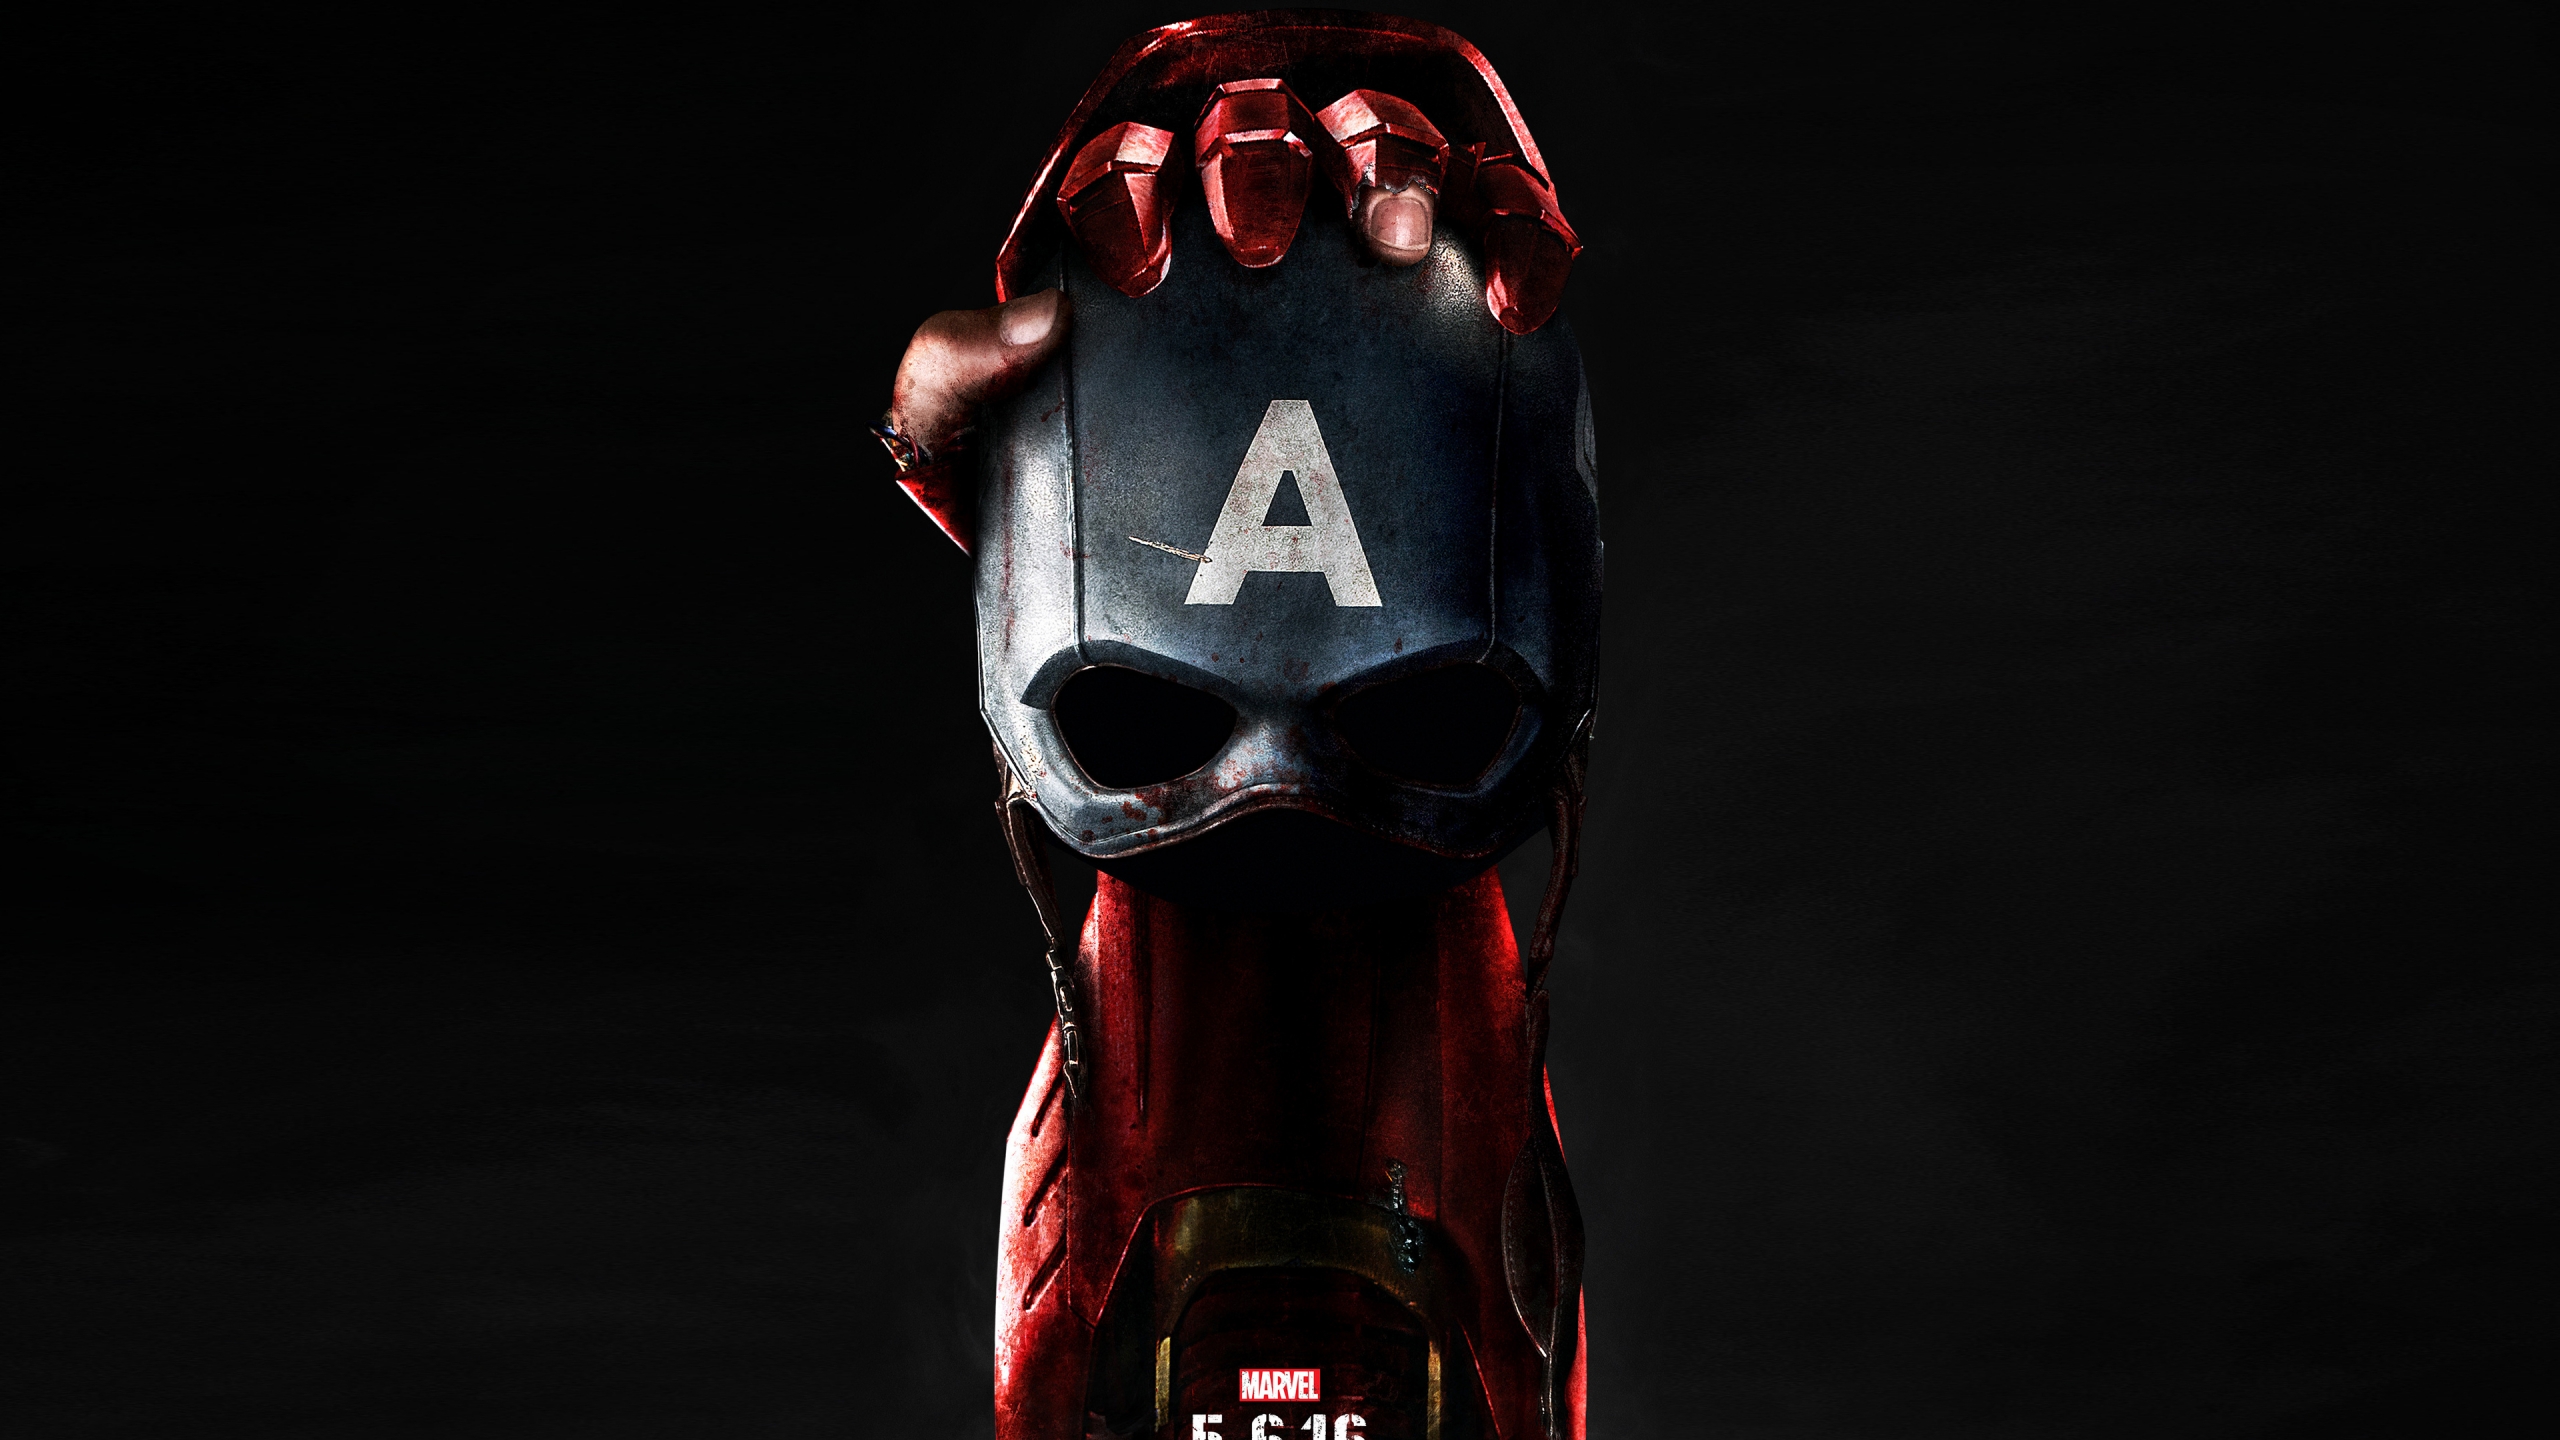 Captain America Civil War Poster 2016 for 2560x1440 HDTV resolution